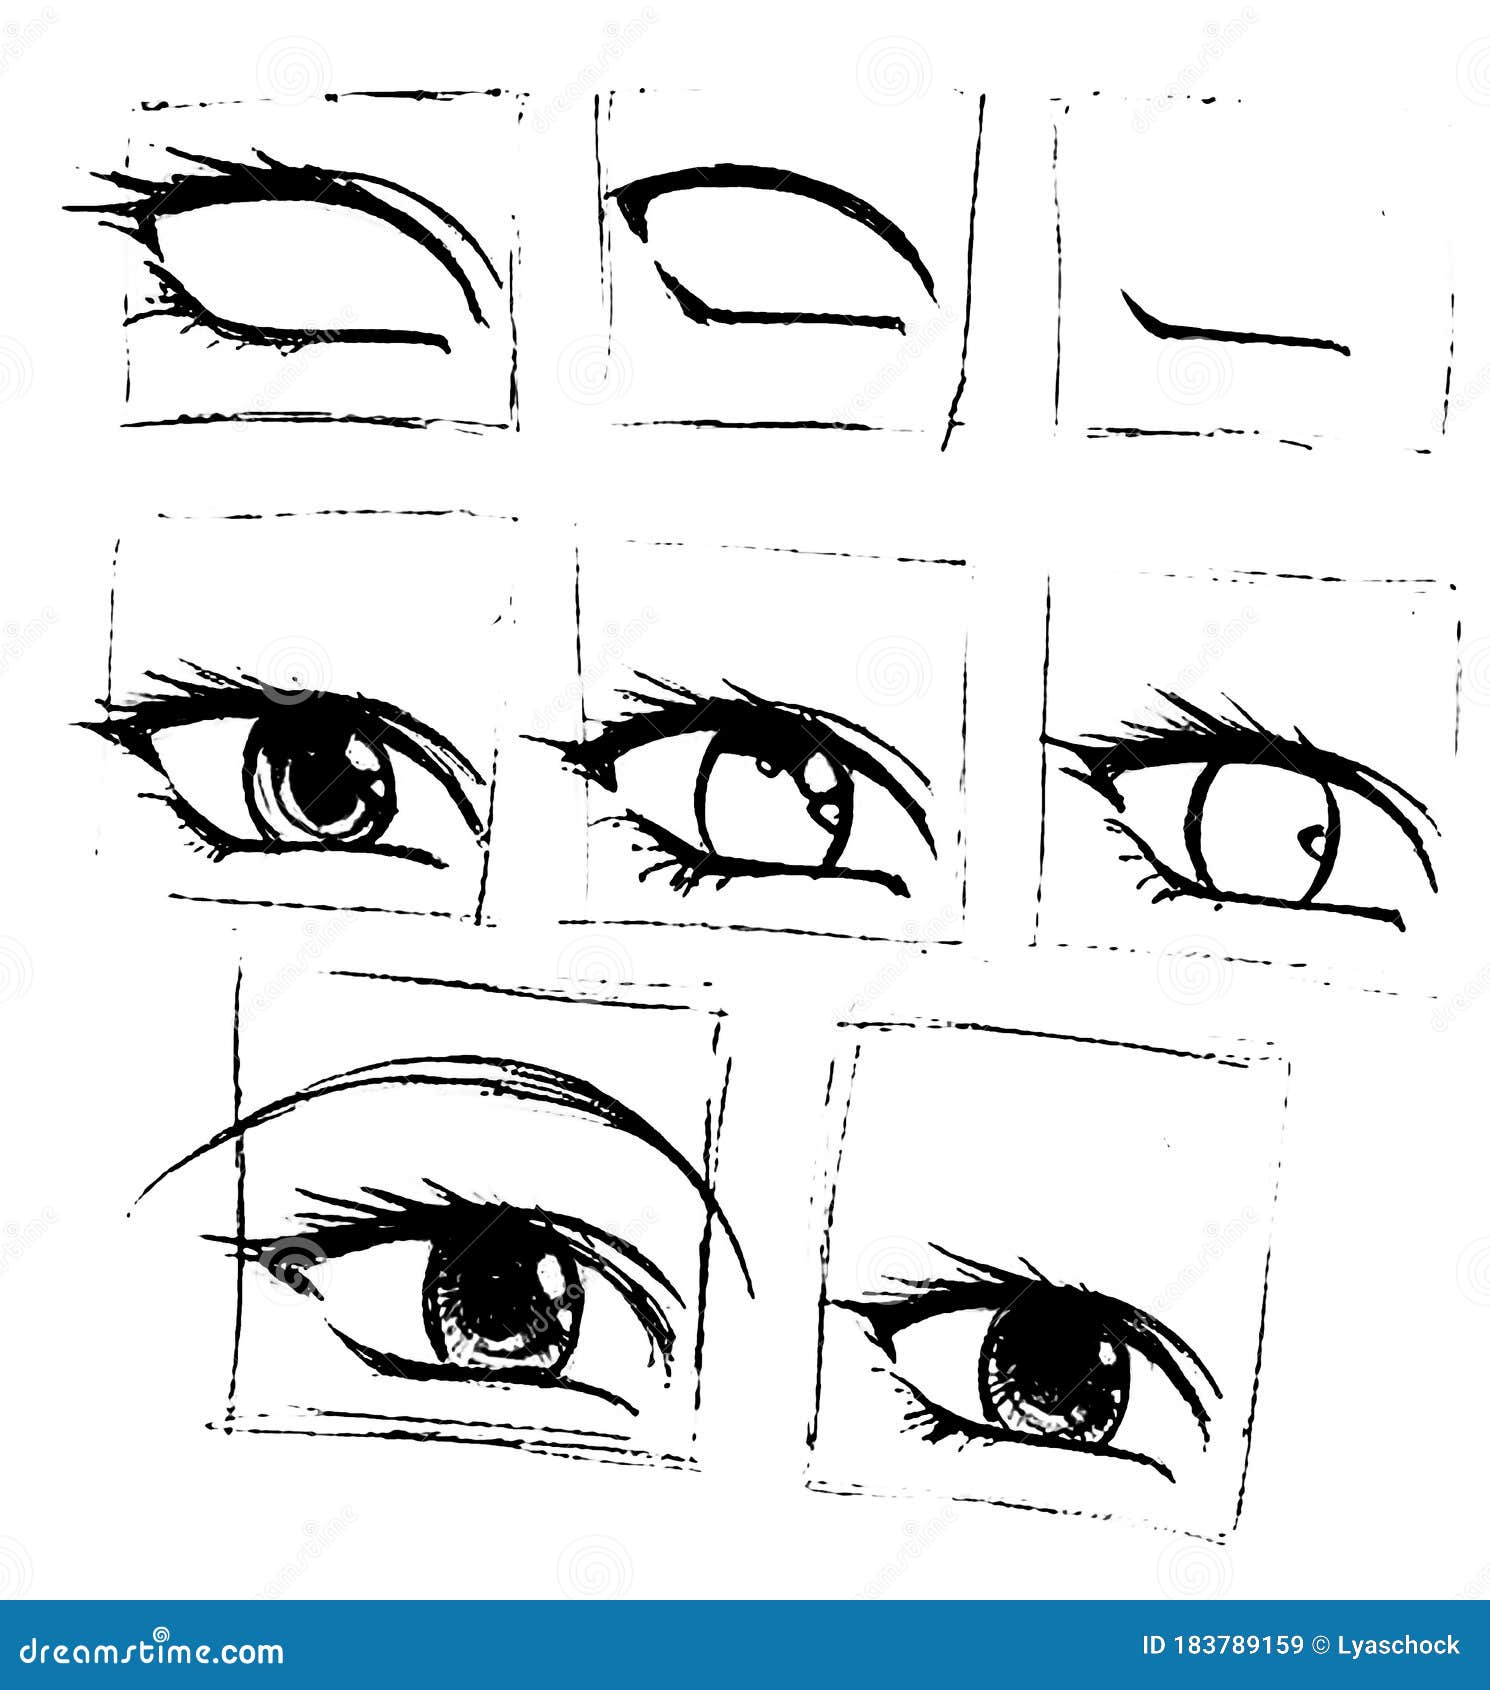 Passo a passo bem fácil de como desenhar olhos de animes